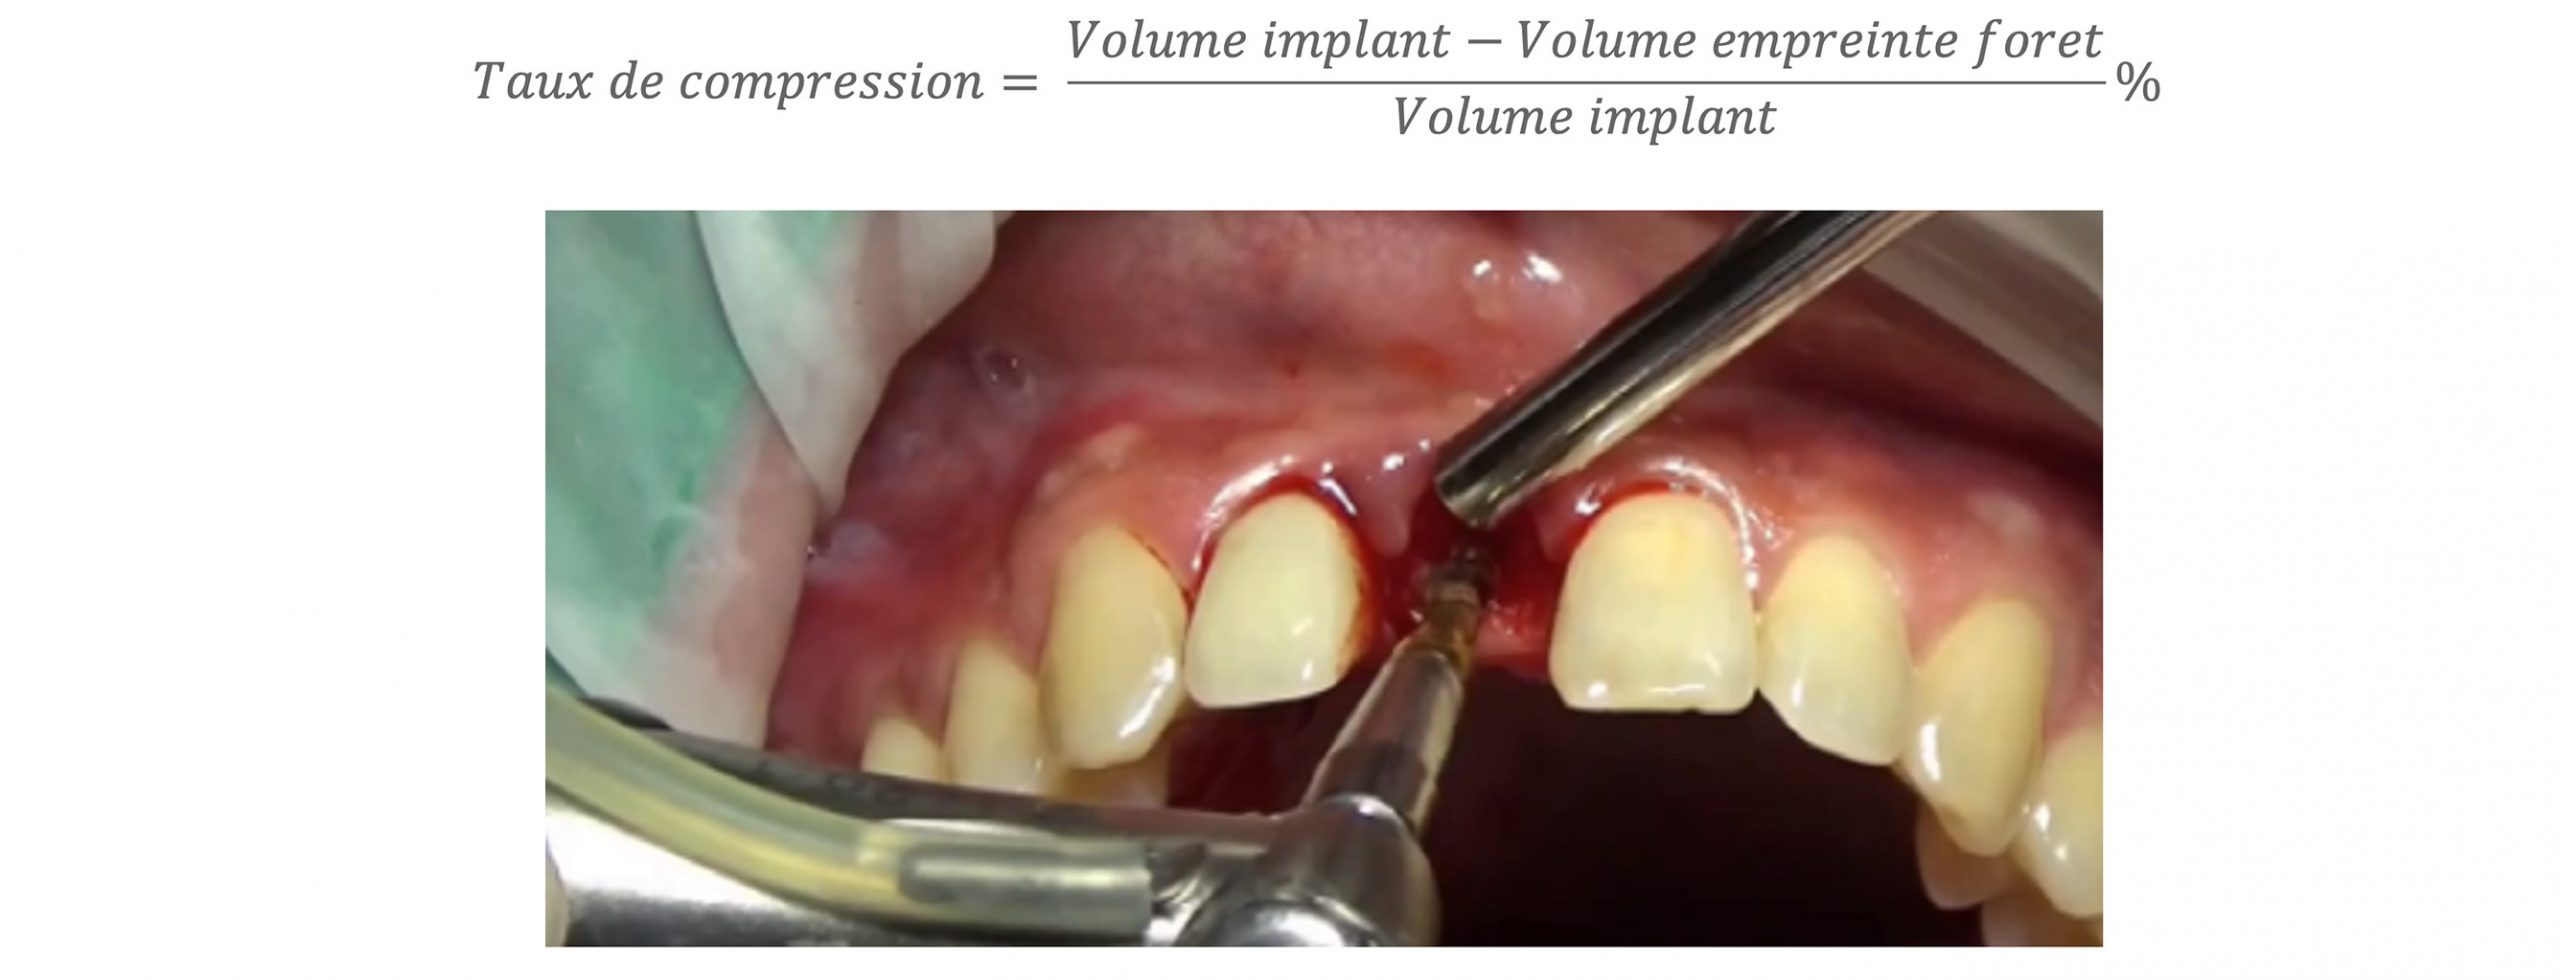 volume-implant-2